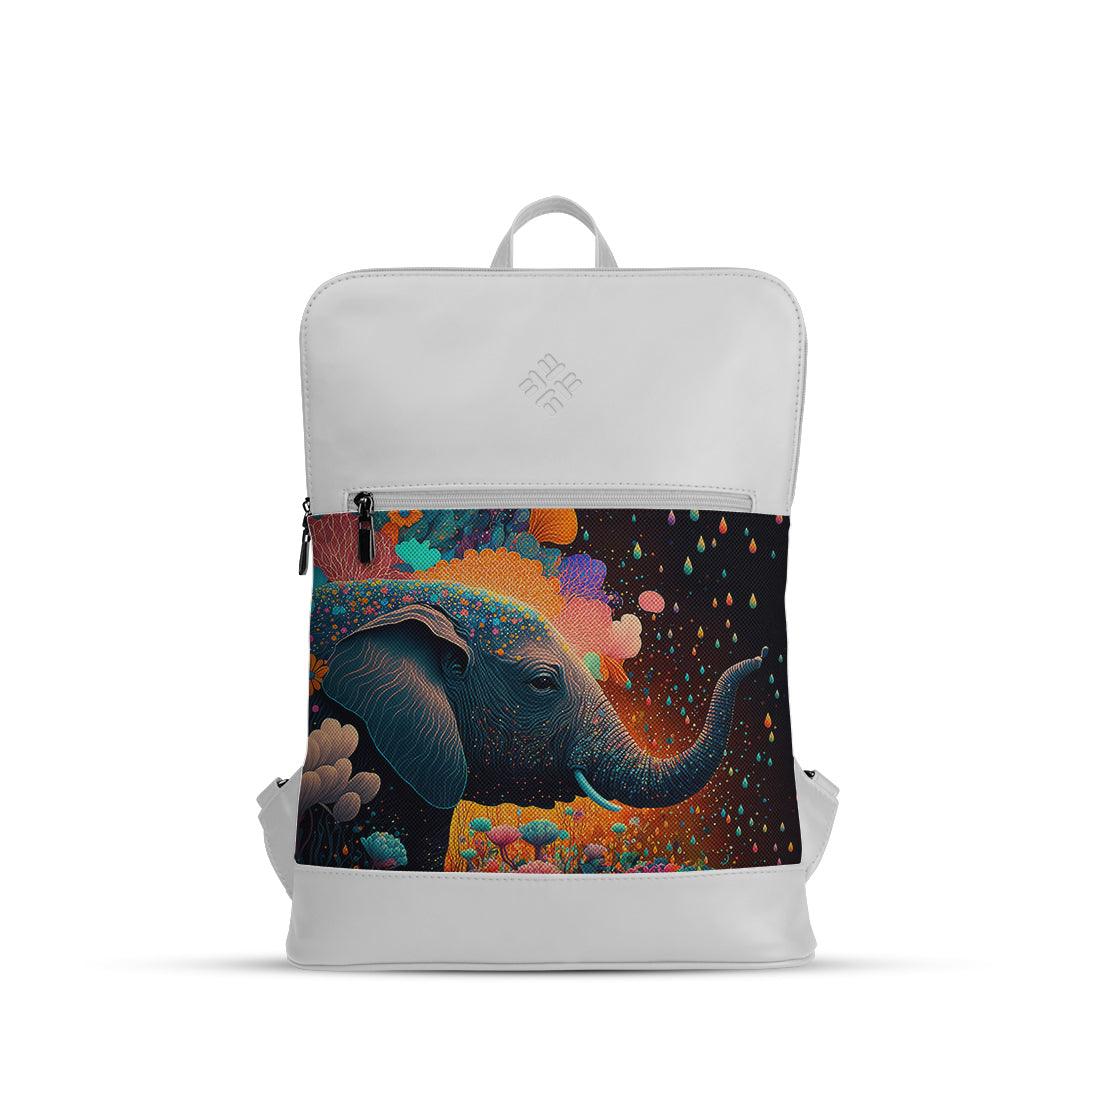 White Orbit Laptop Backpack Giant Elephant - CANVAEGYPT